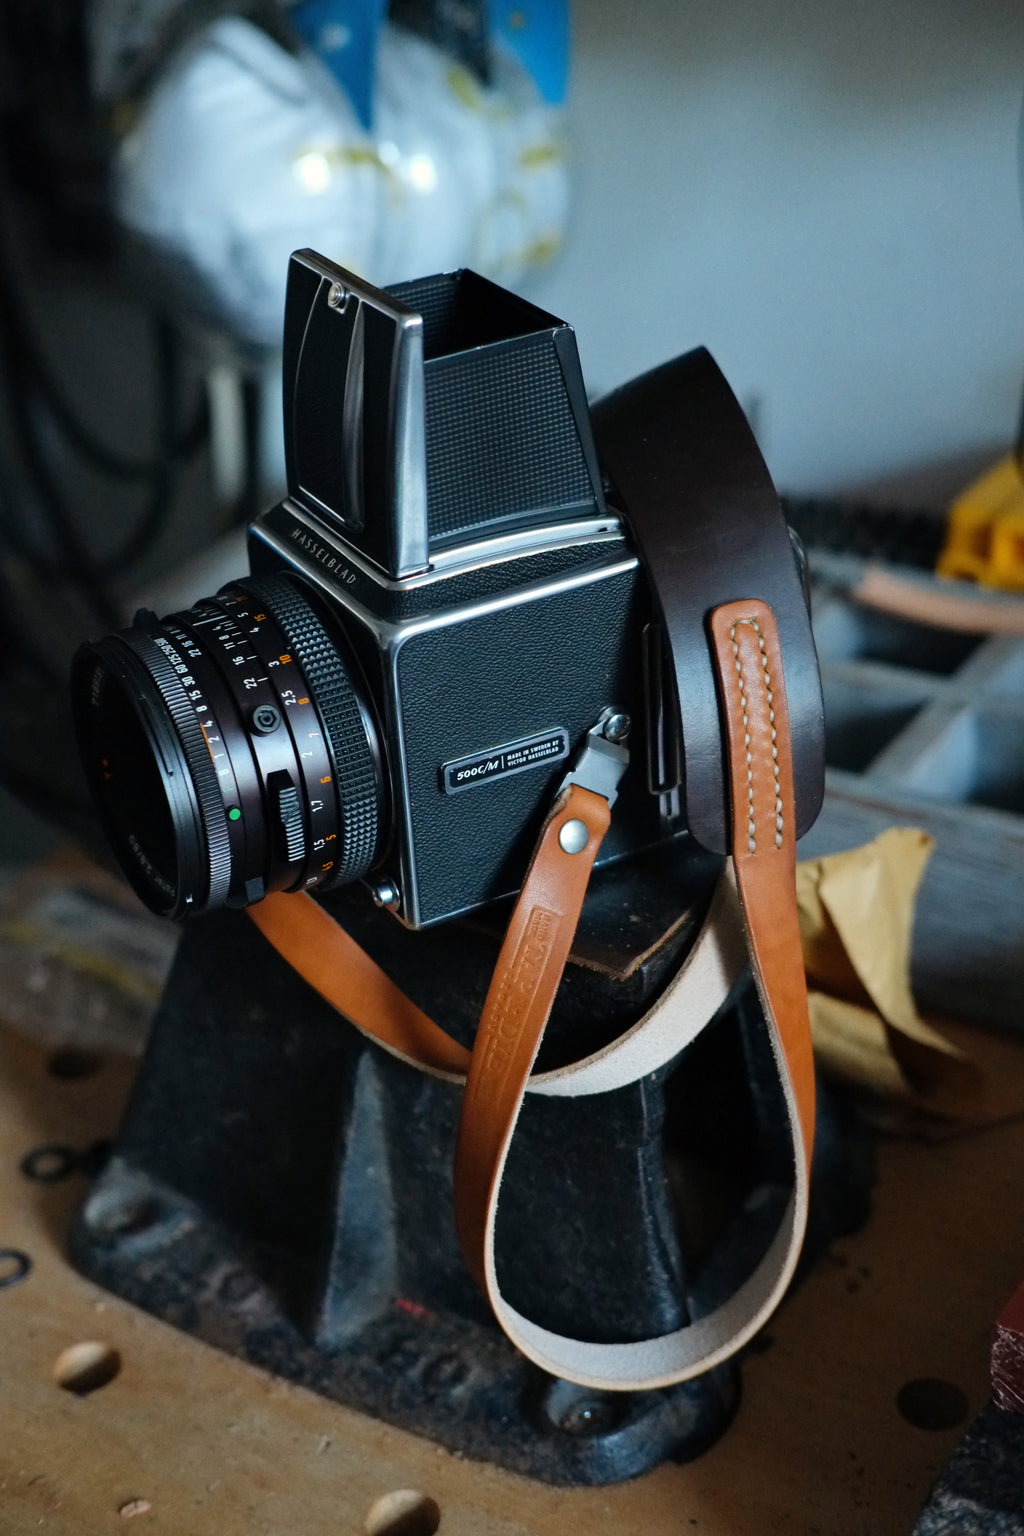 Hasselblad camera strap